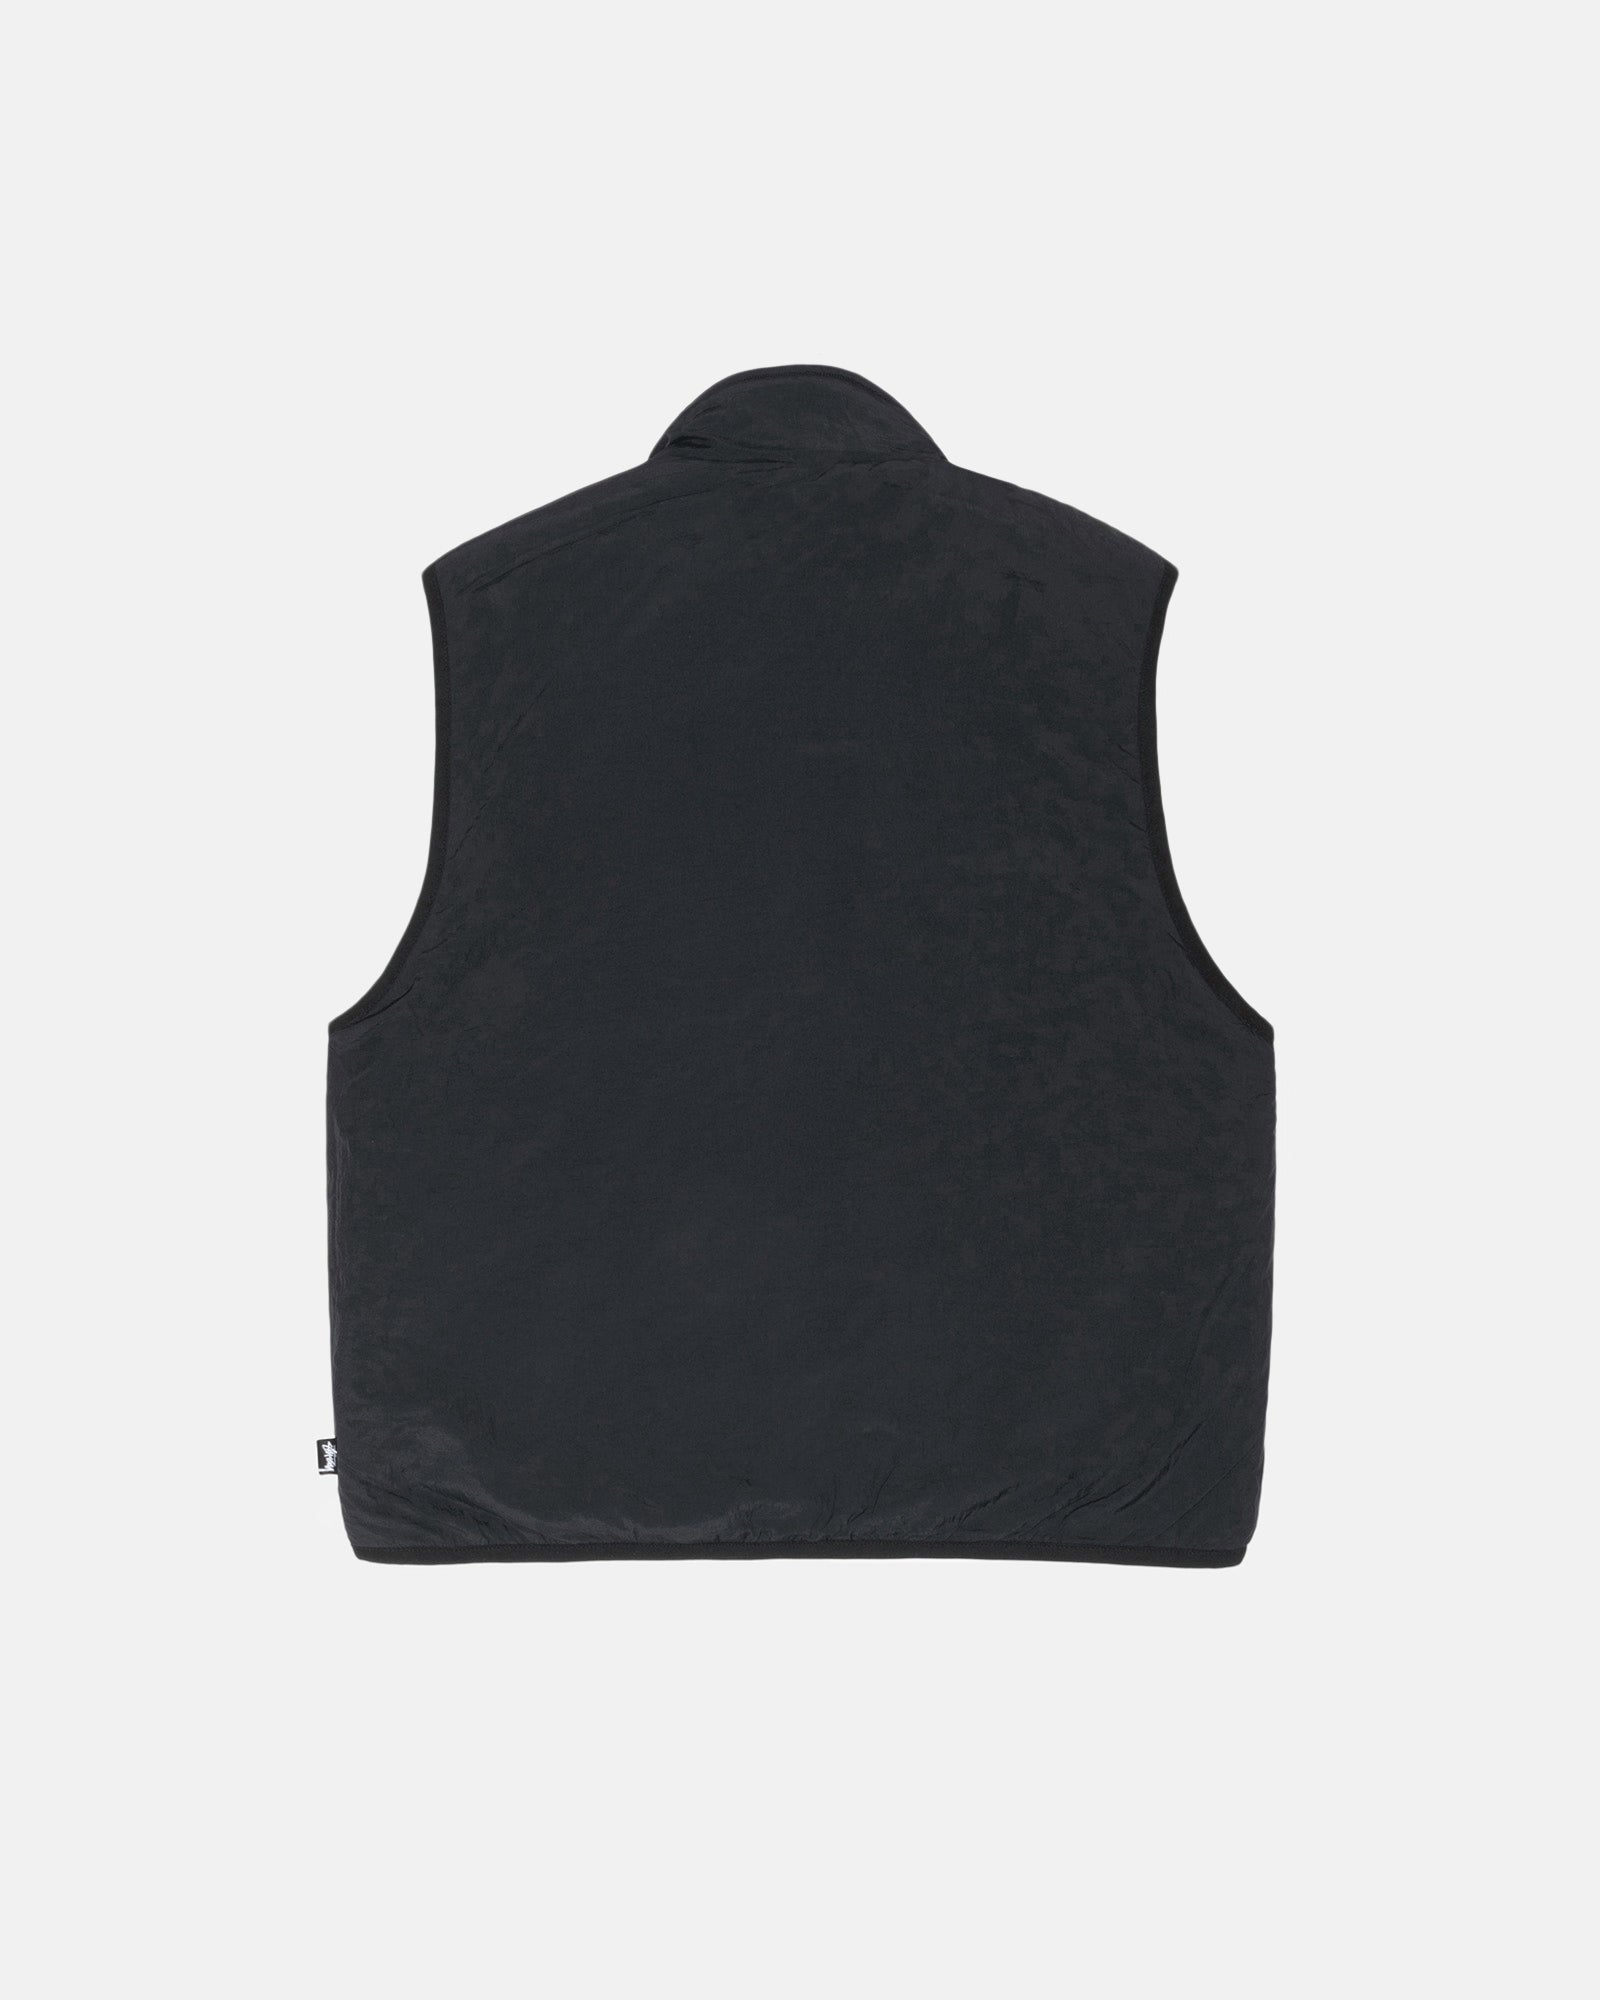 Sherpa Reversible Vest Beige Outerwear